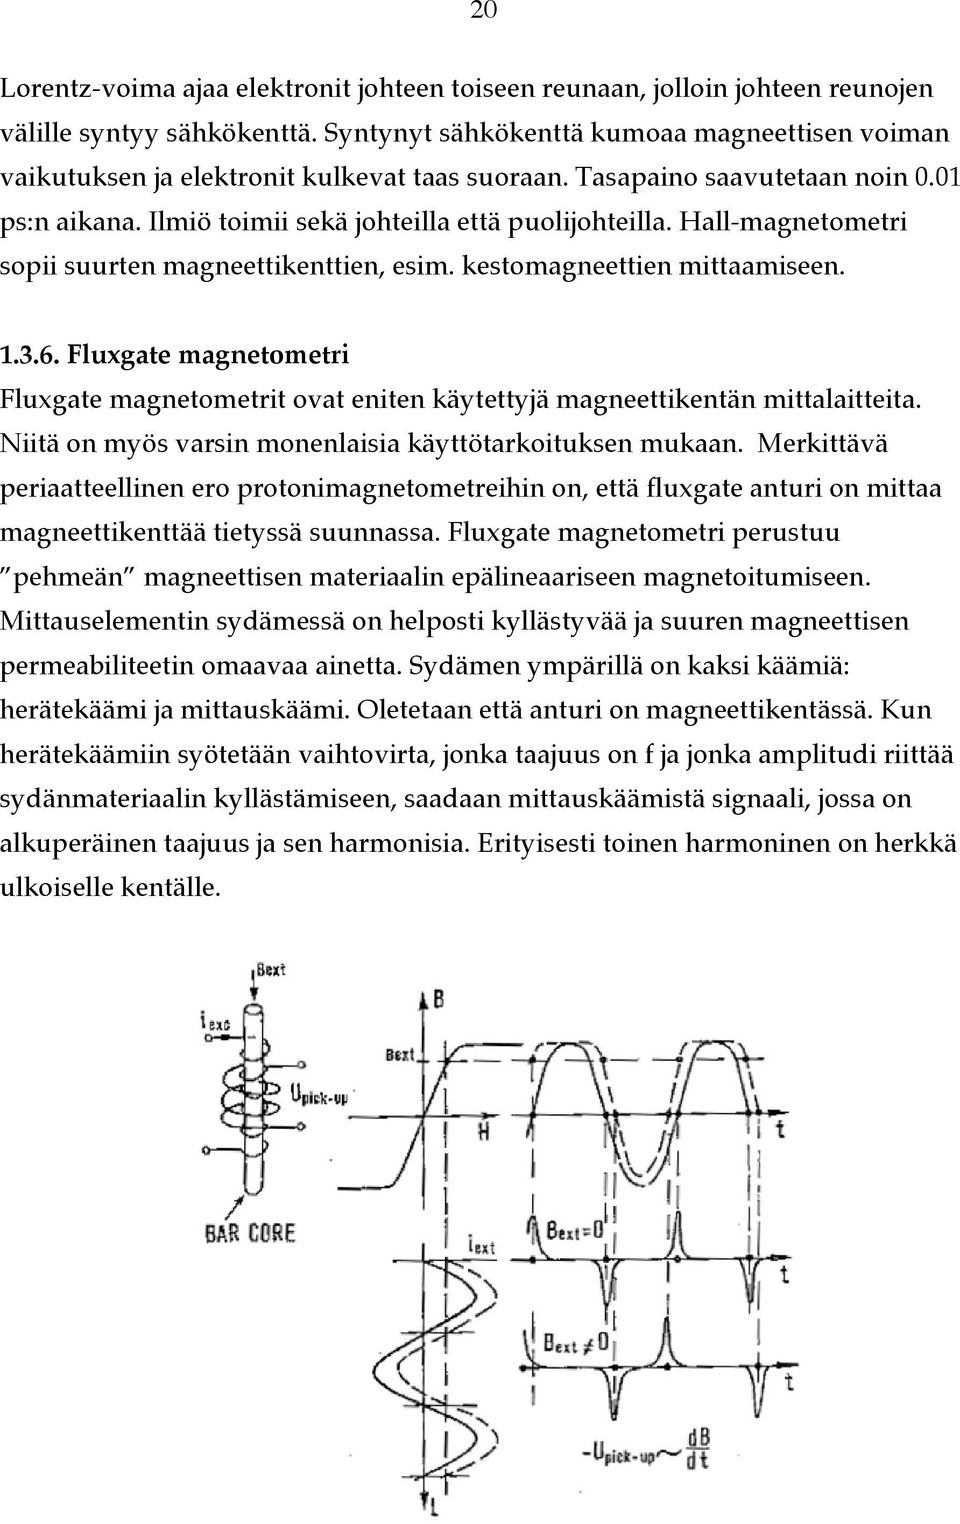 Hall-magnetometri sopii suurten magneettikenttien, esim. kestomagneettien mittaamiseen. 1.3.6. Fluxgate magnetometri Fluxgate magnetometrit ovat eniten käytettyjä magneettikentän mittalaitteita.